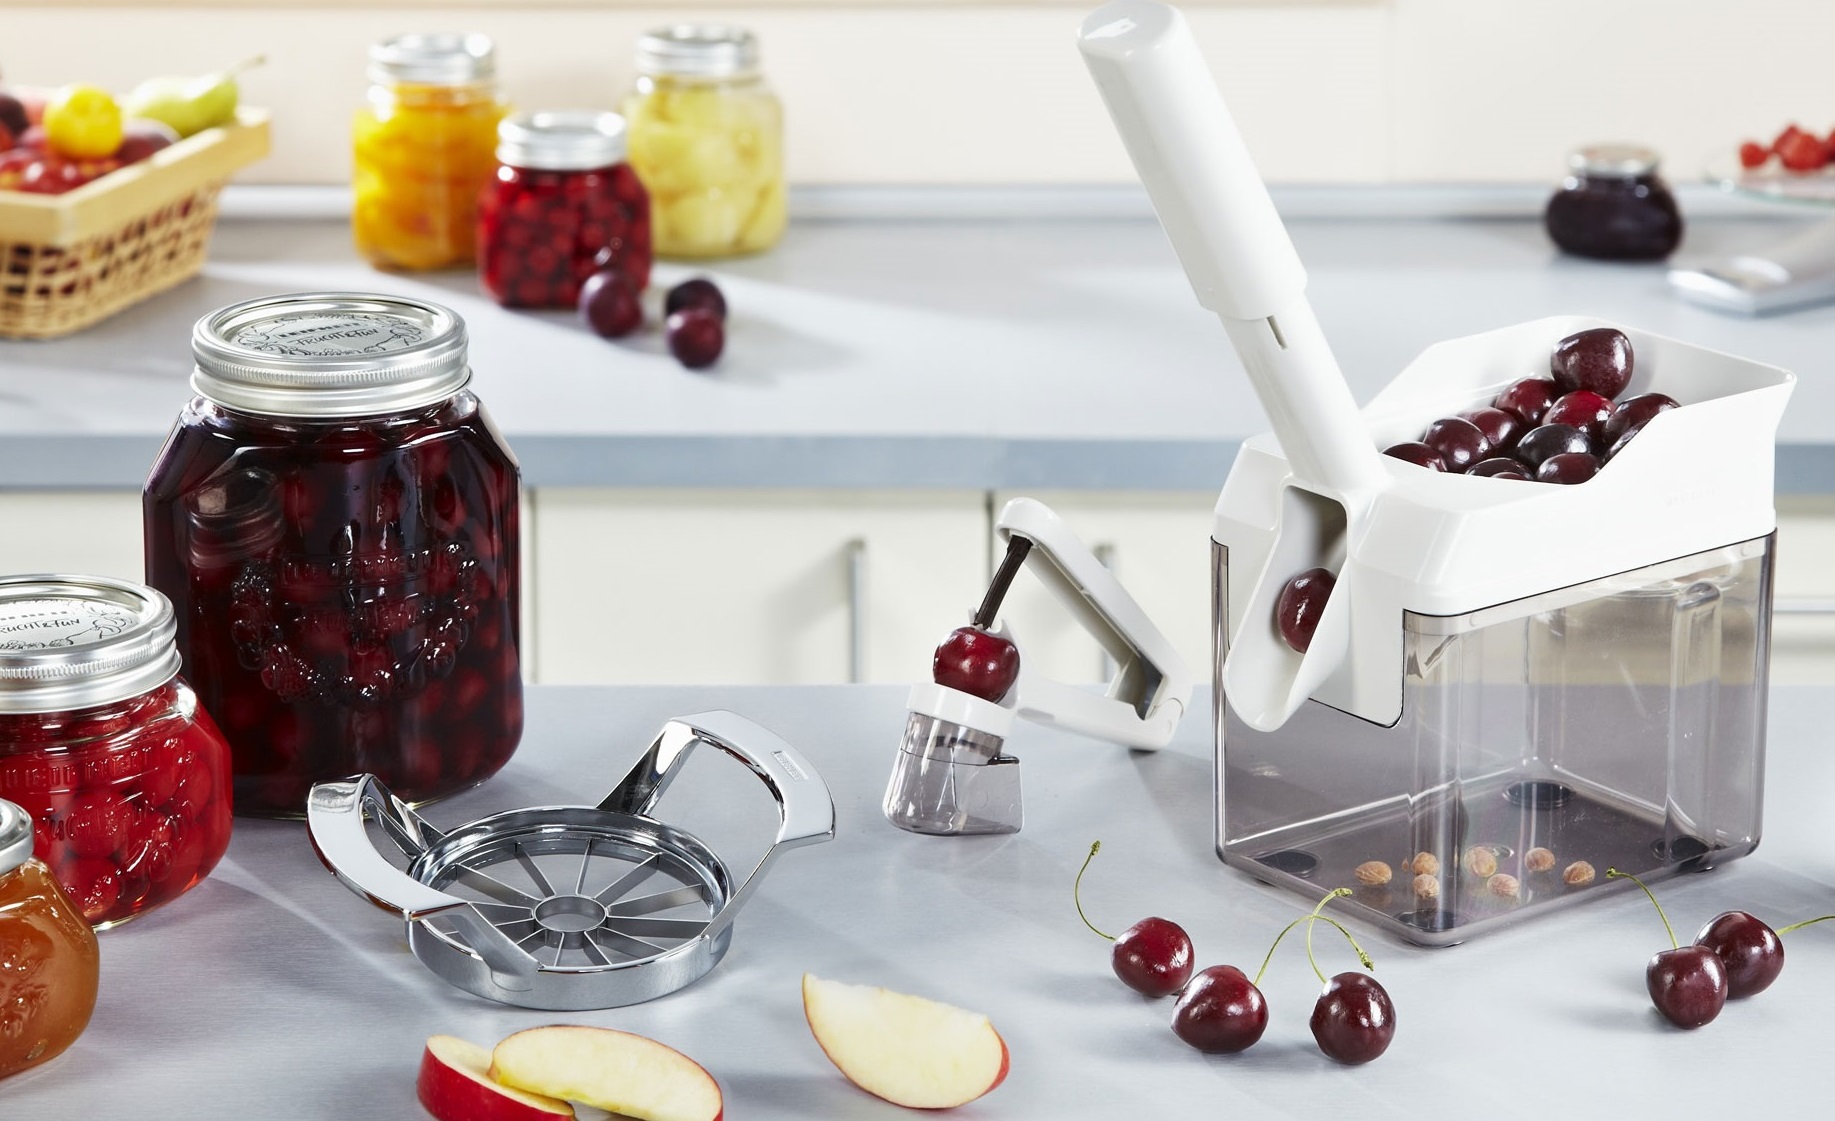 Полезные приспособления для кухни: машинка для удаления косточек из вишни